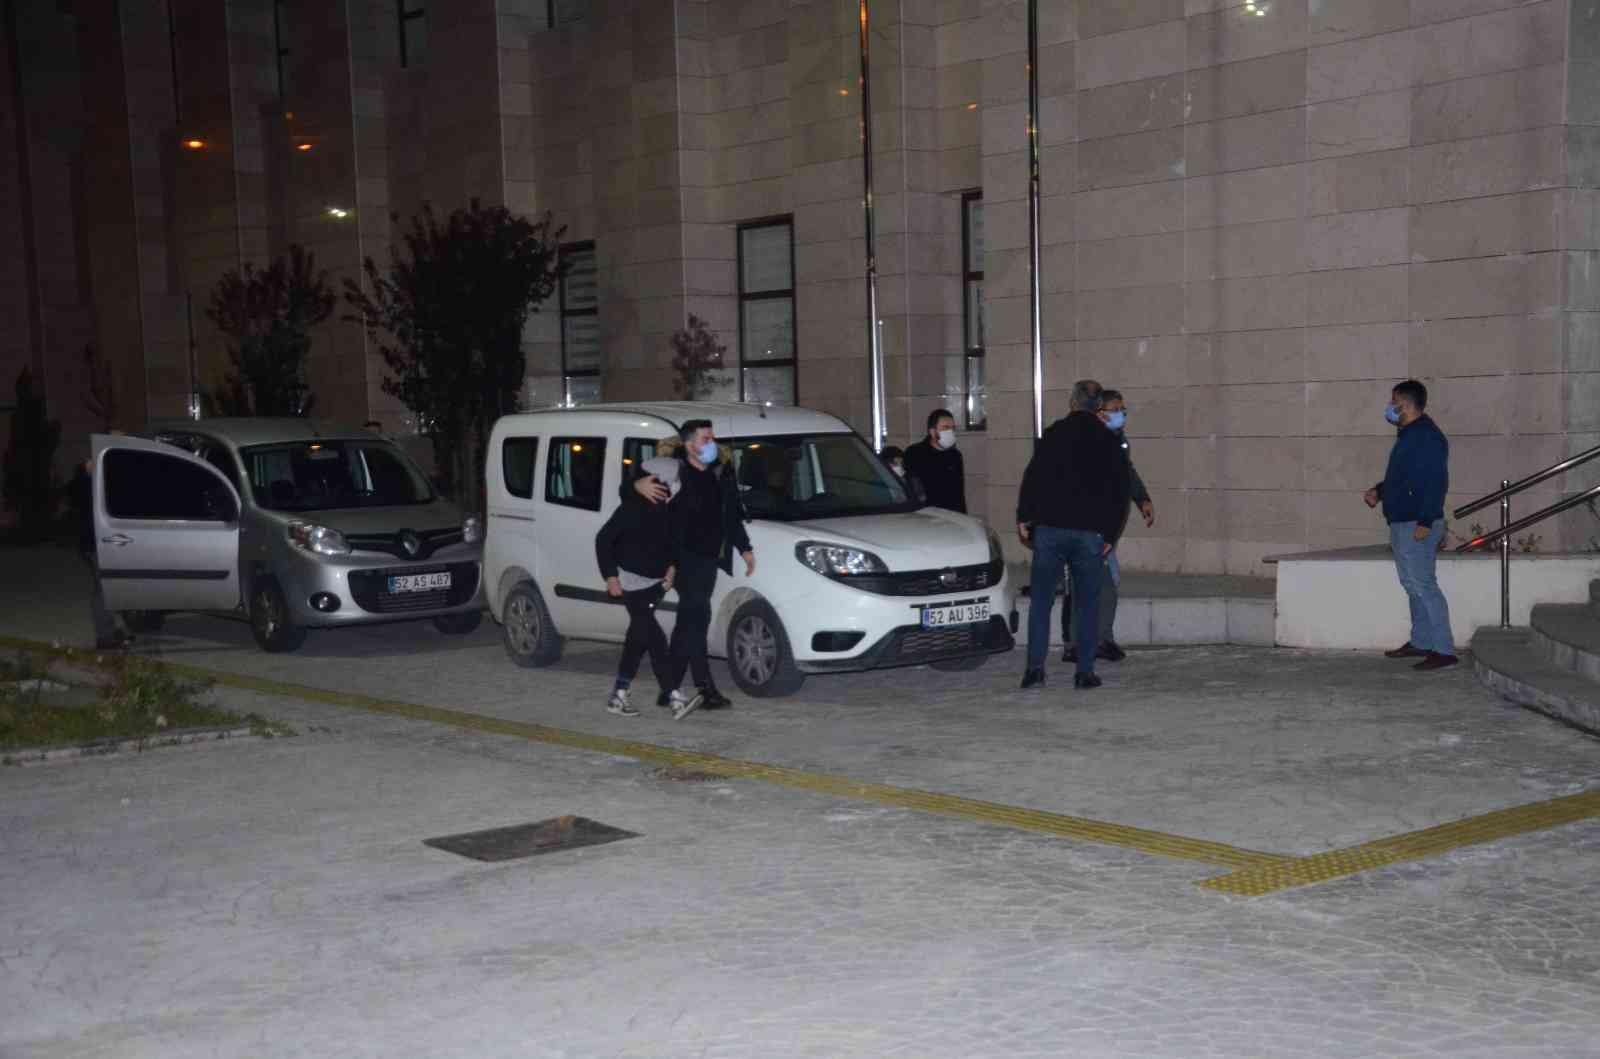 Çaldıkları otomobil ile İstanbul’da yakalanan 3 çocuk, Ordu’ya getirildi #ordu